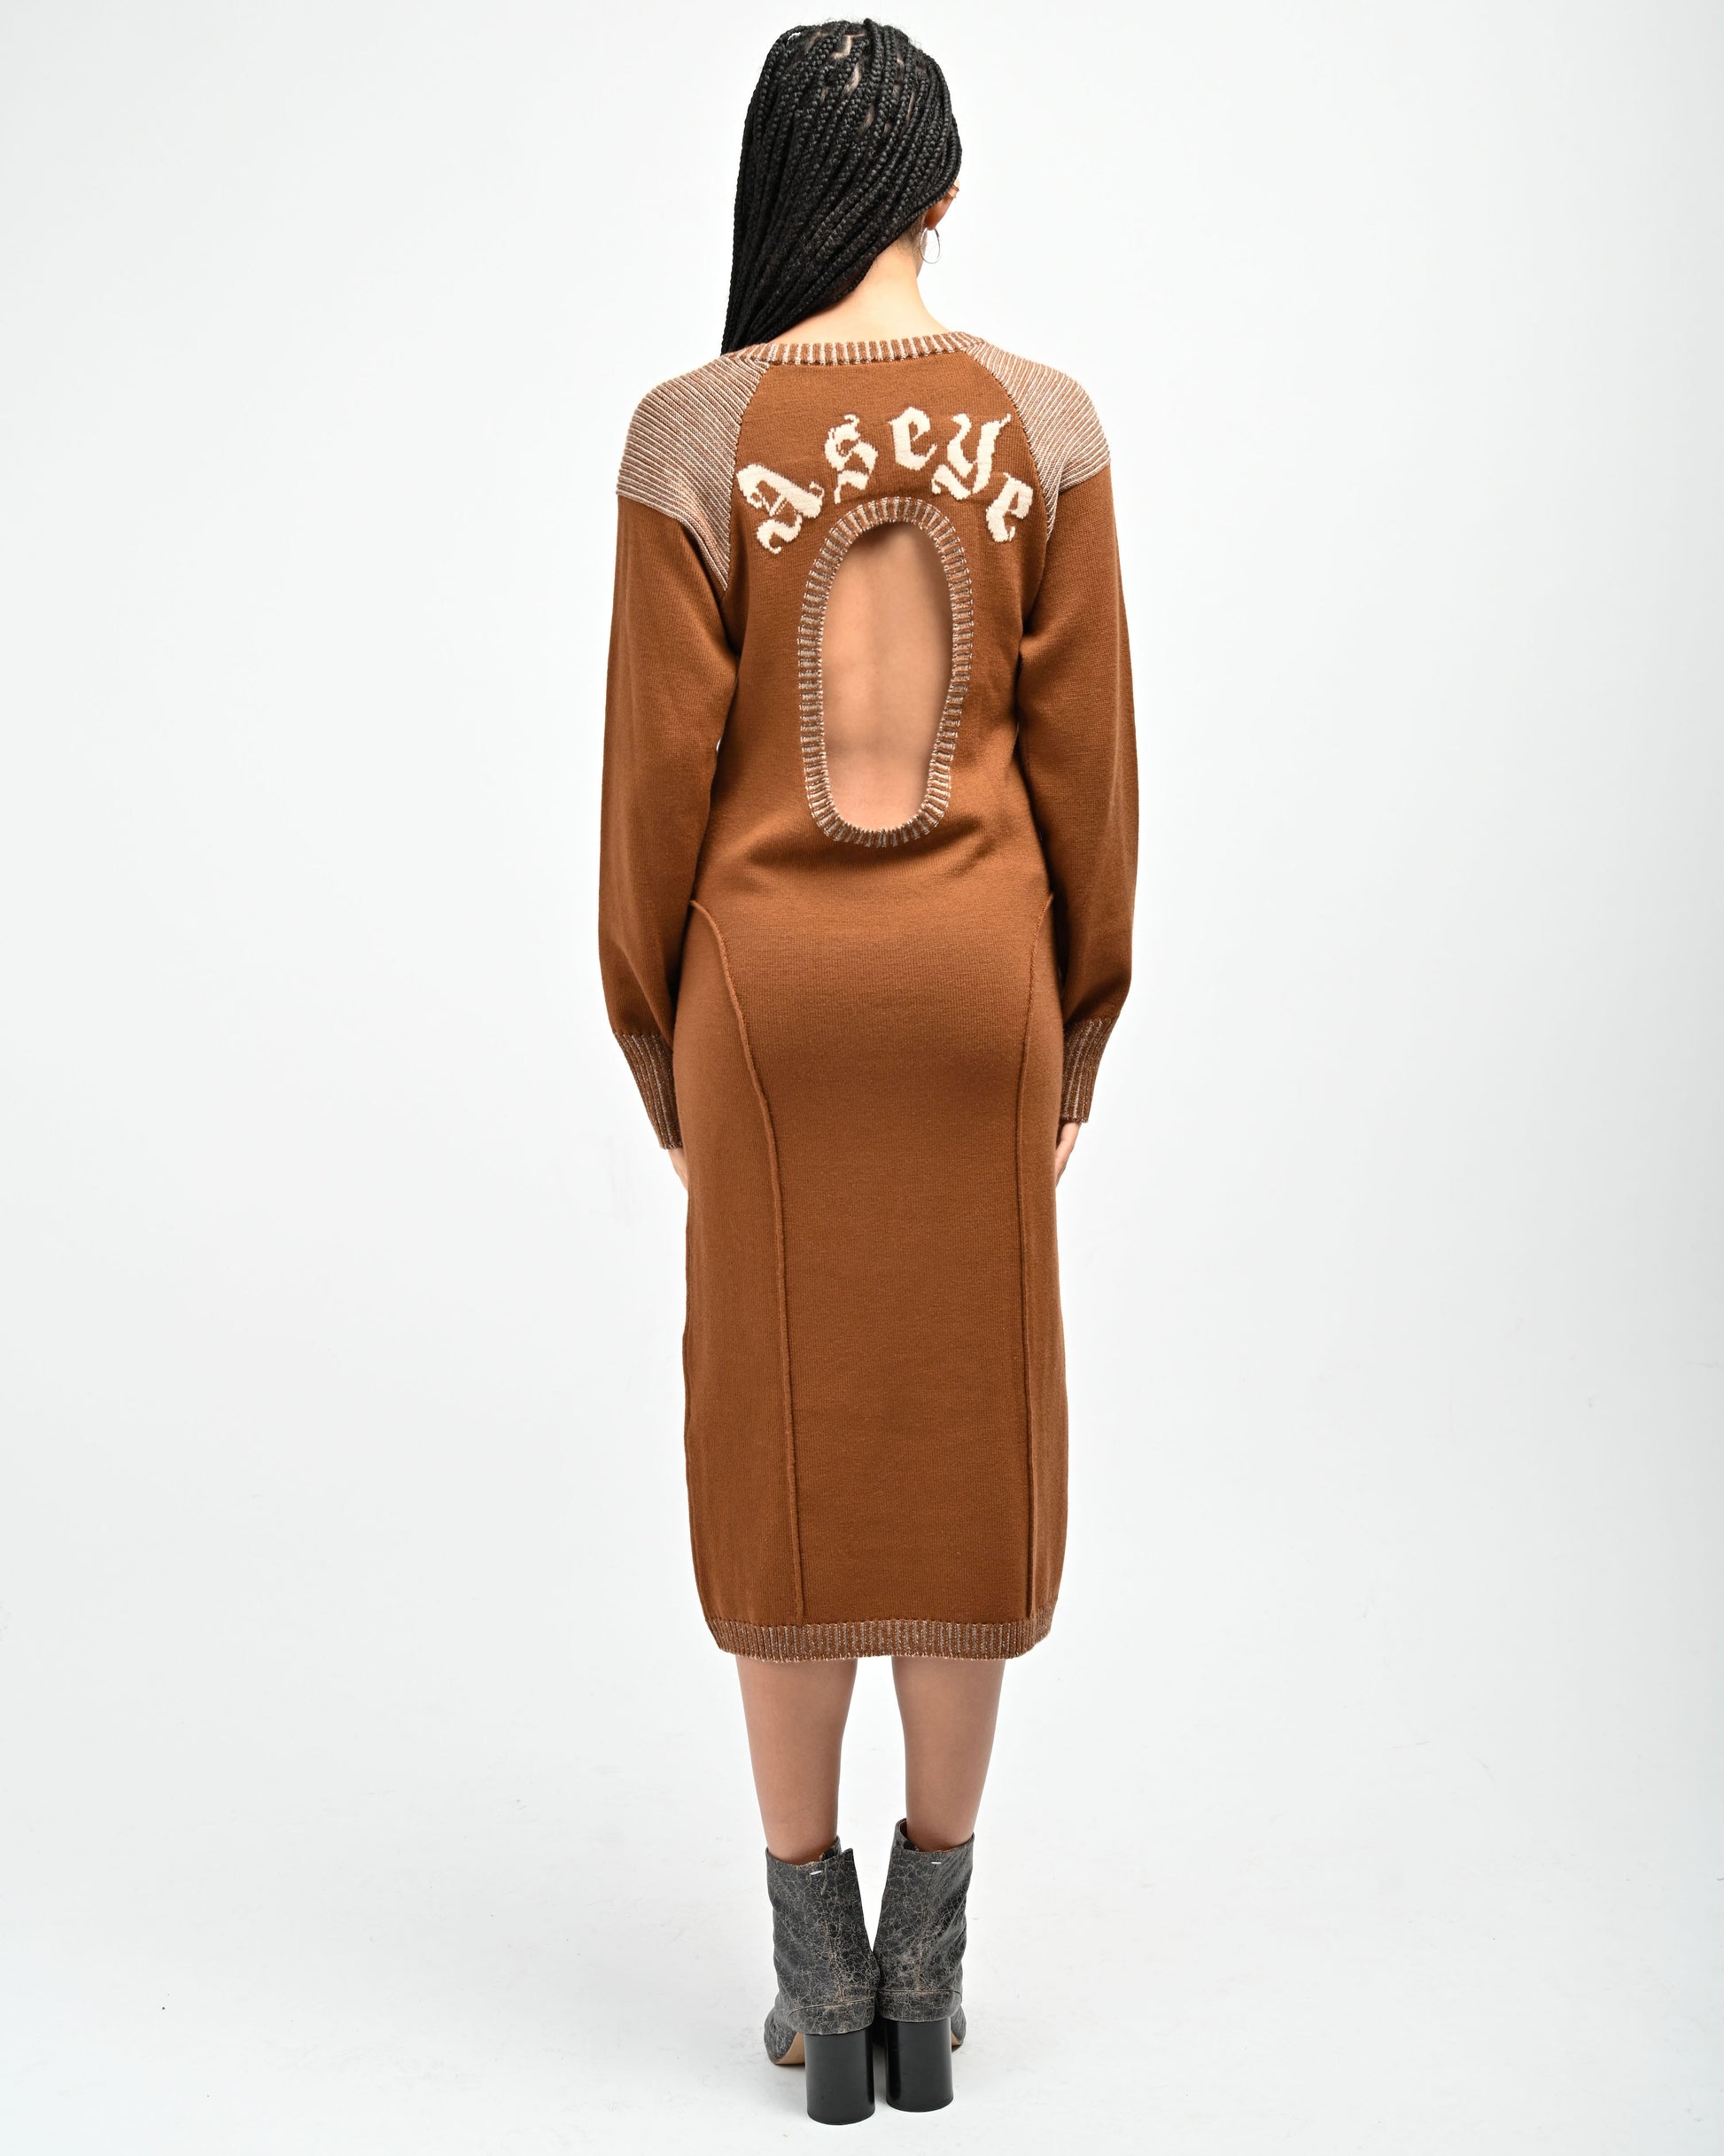 Back View of model wearing Lola Open Back Dress in Copper by Aseye Studio